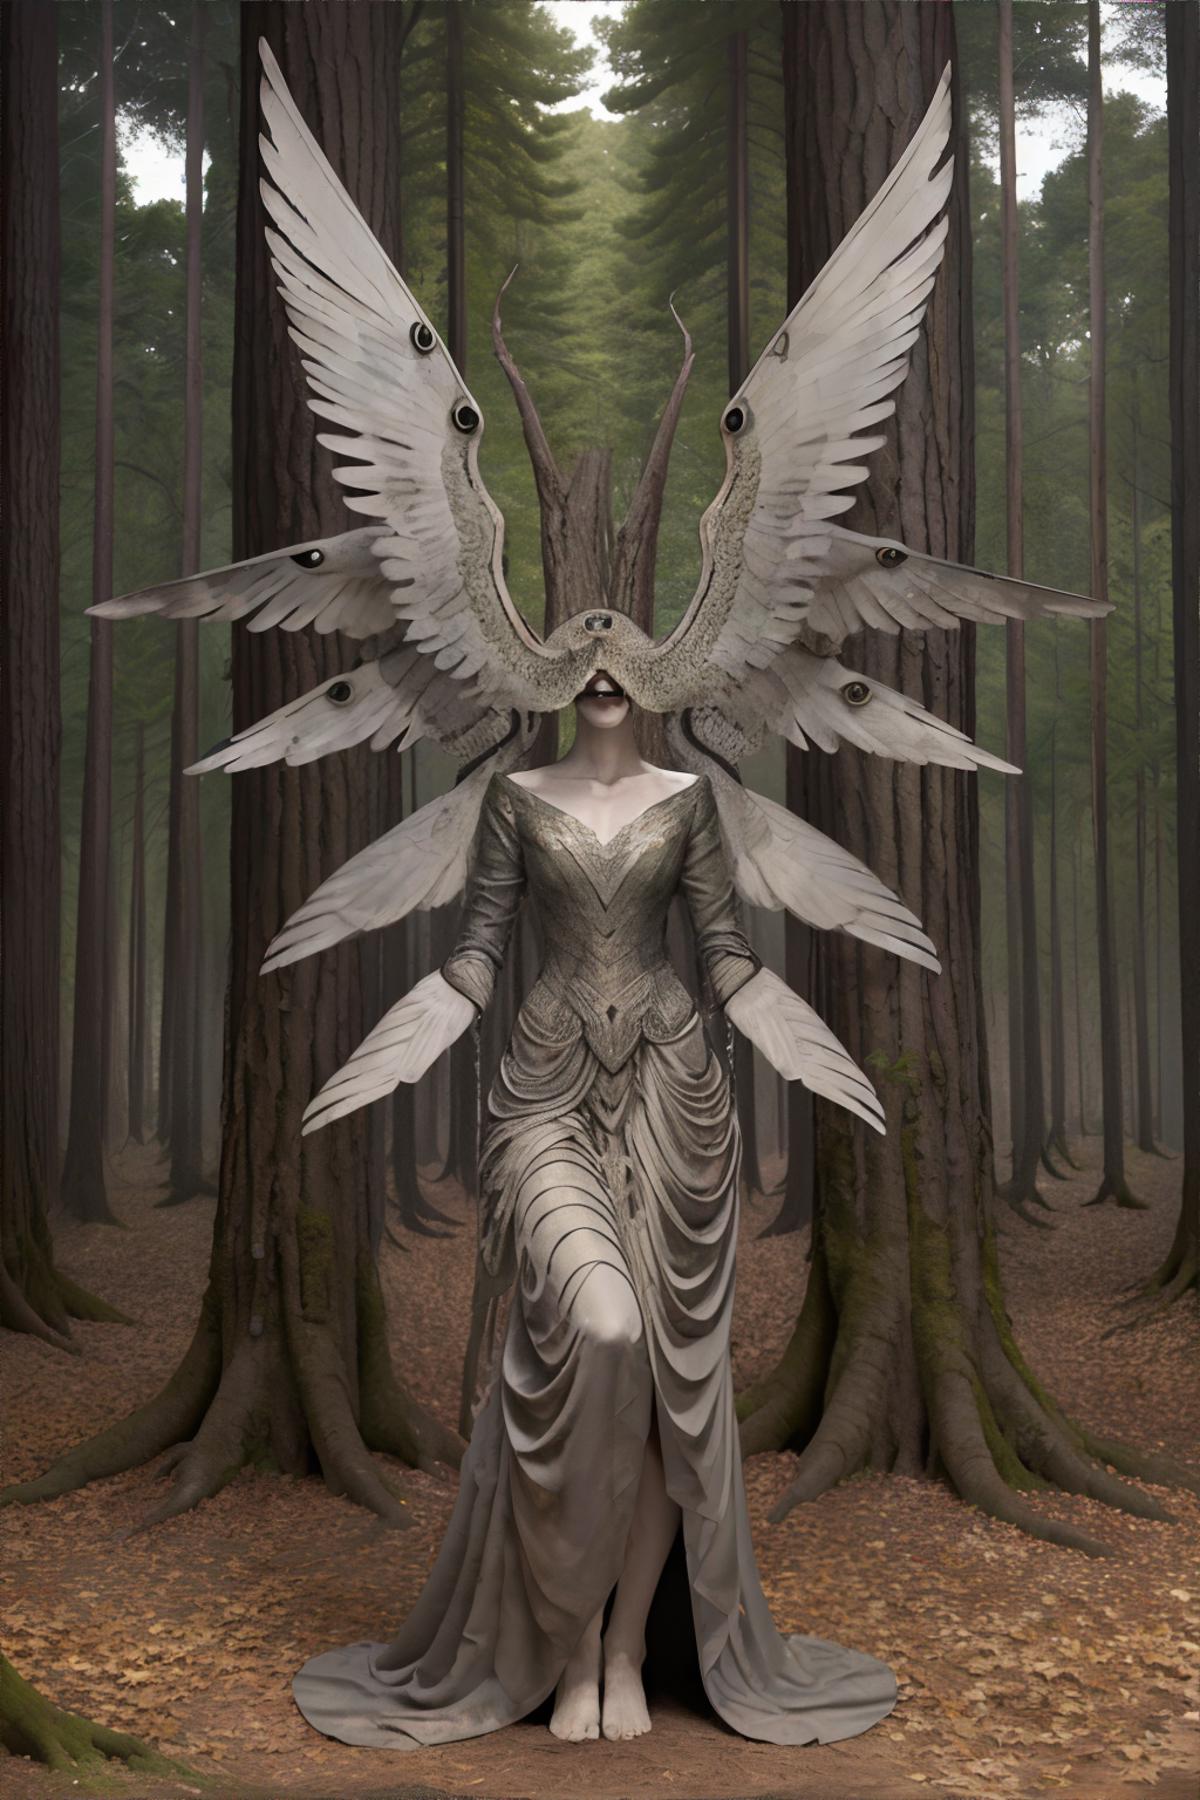 Angelic Gaze image by bzlibby